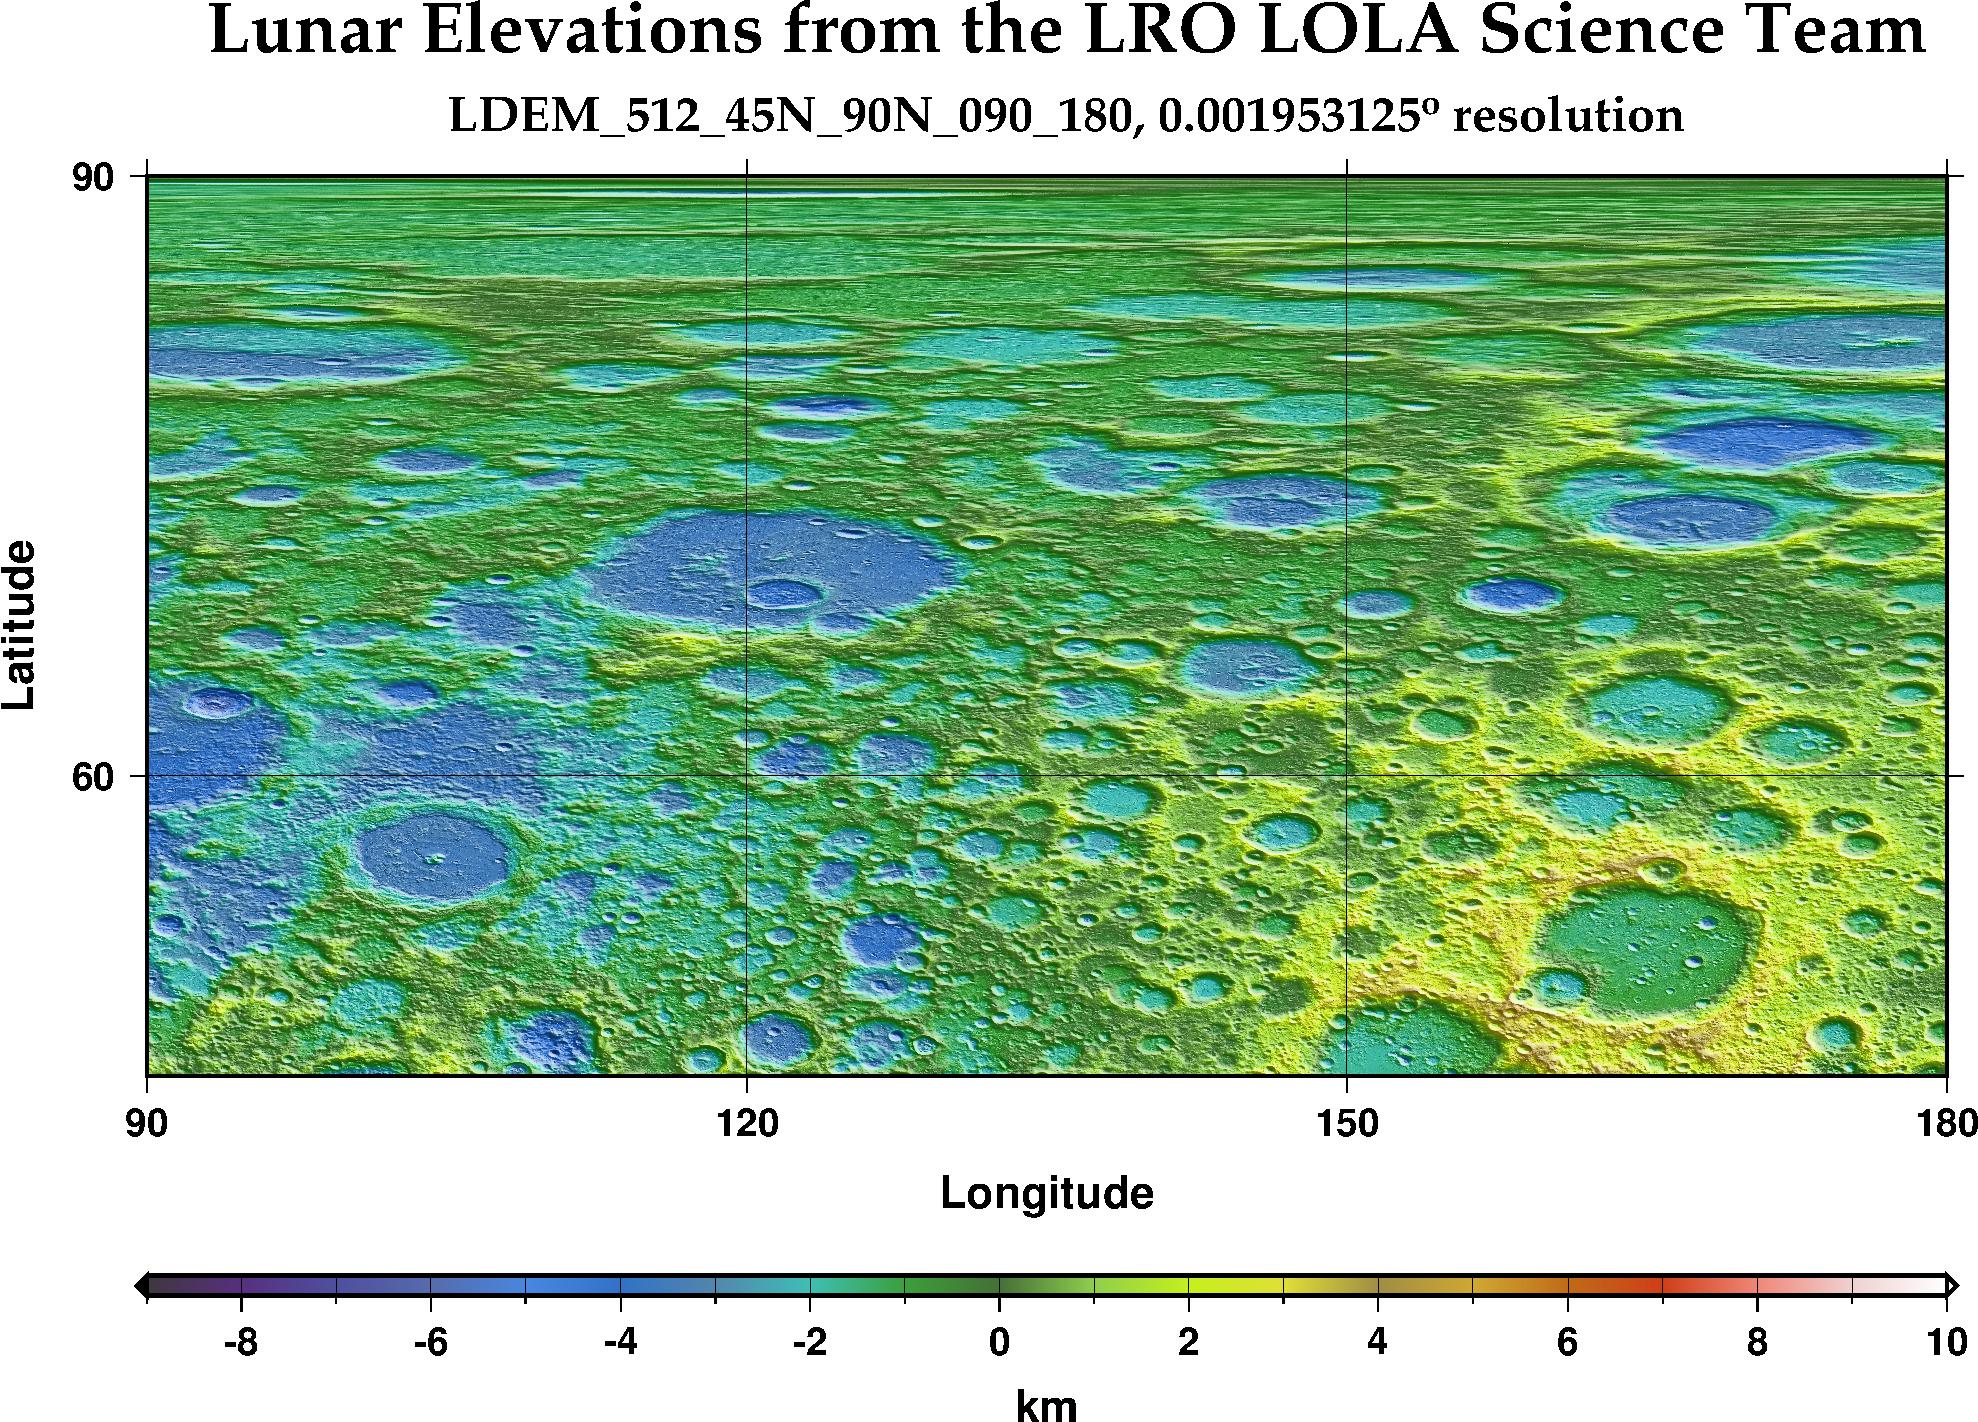 image of lunar topography for LDEM_512_45N_90N_090_180.JPG